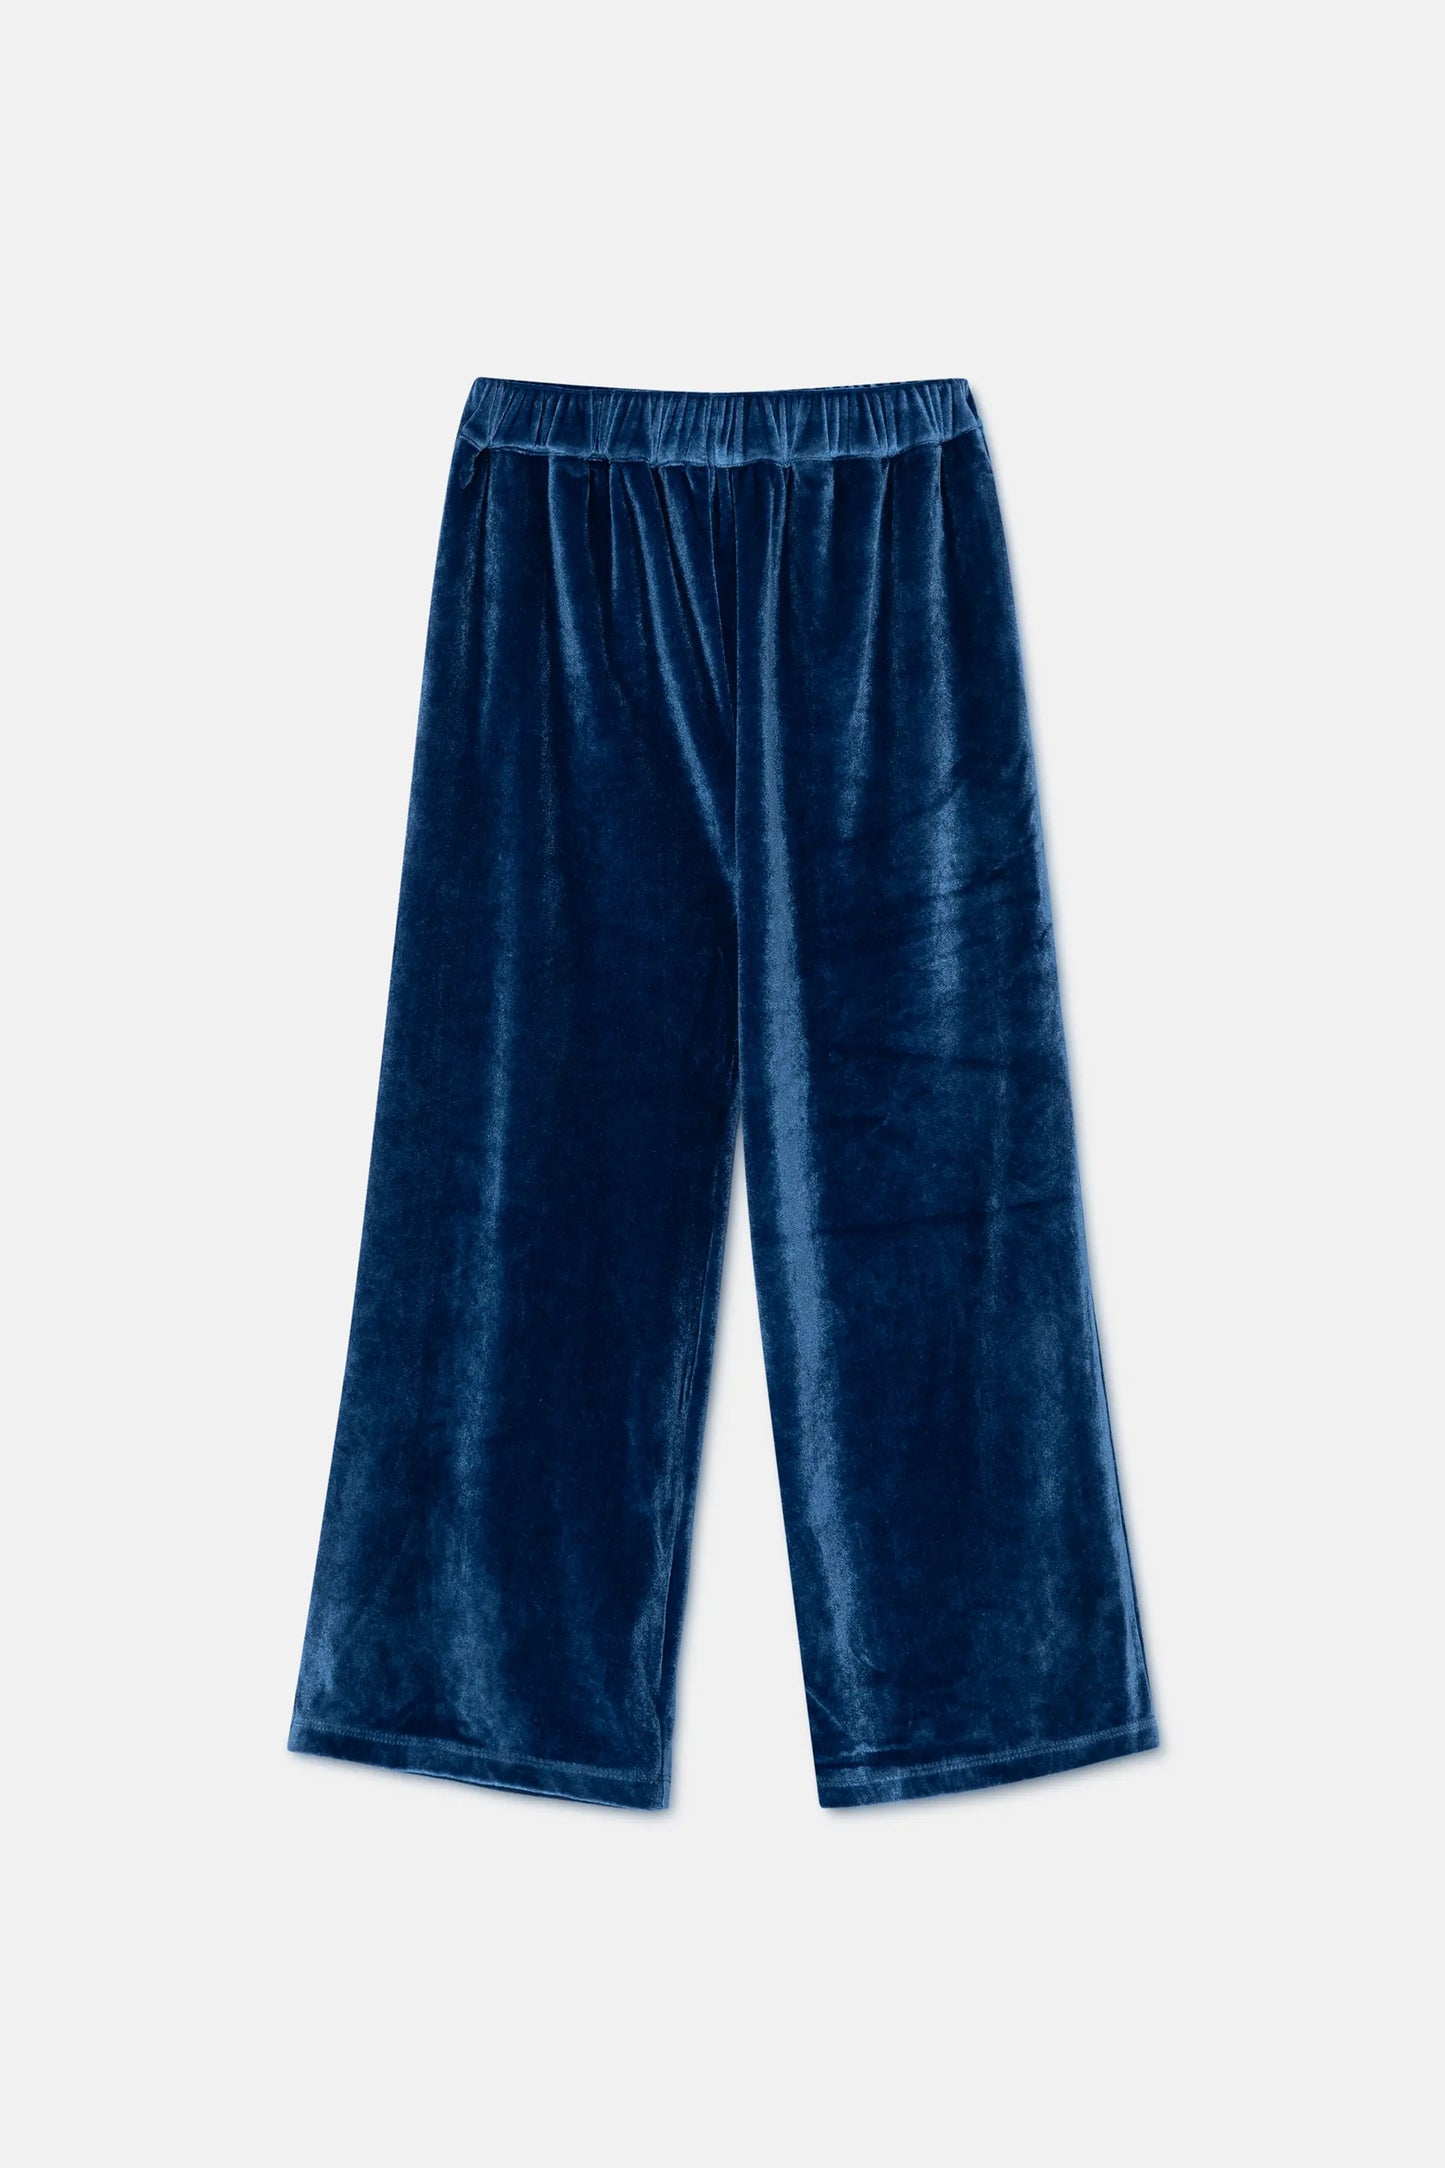 Pantalón unisex en terciopelo azul